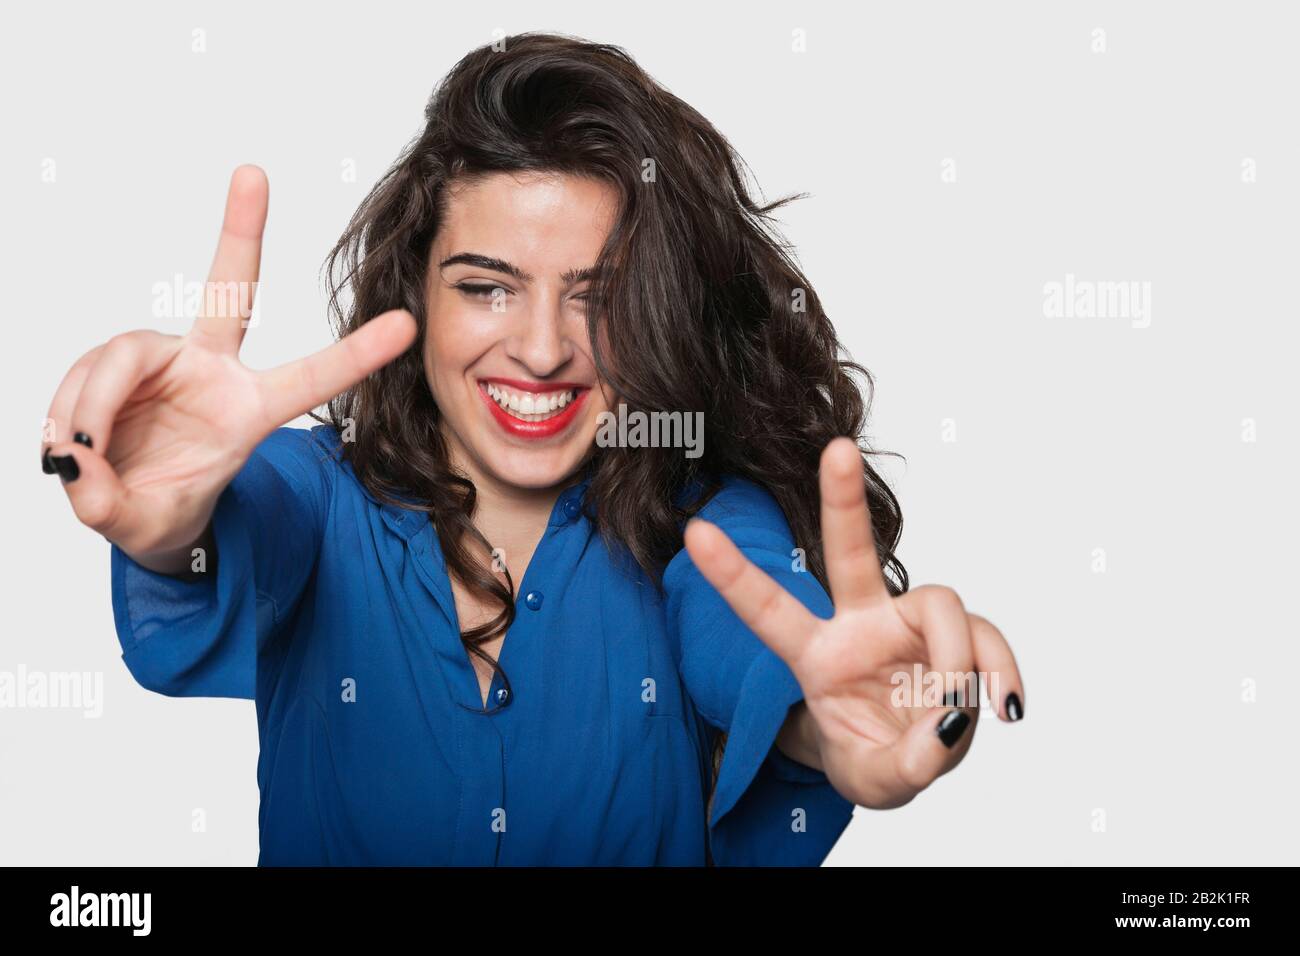 Une jeune femme heureuse signe de victoire gestuelle sur fond gris Banque D'Images